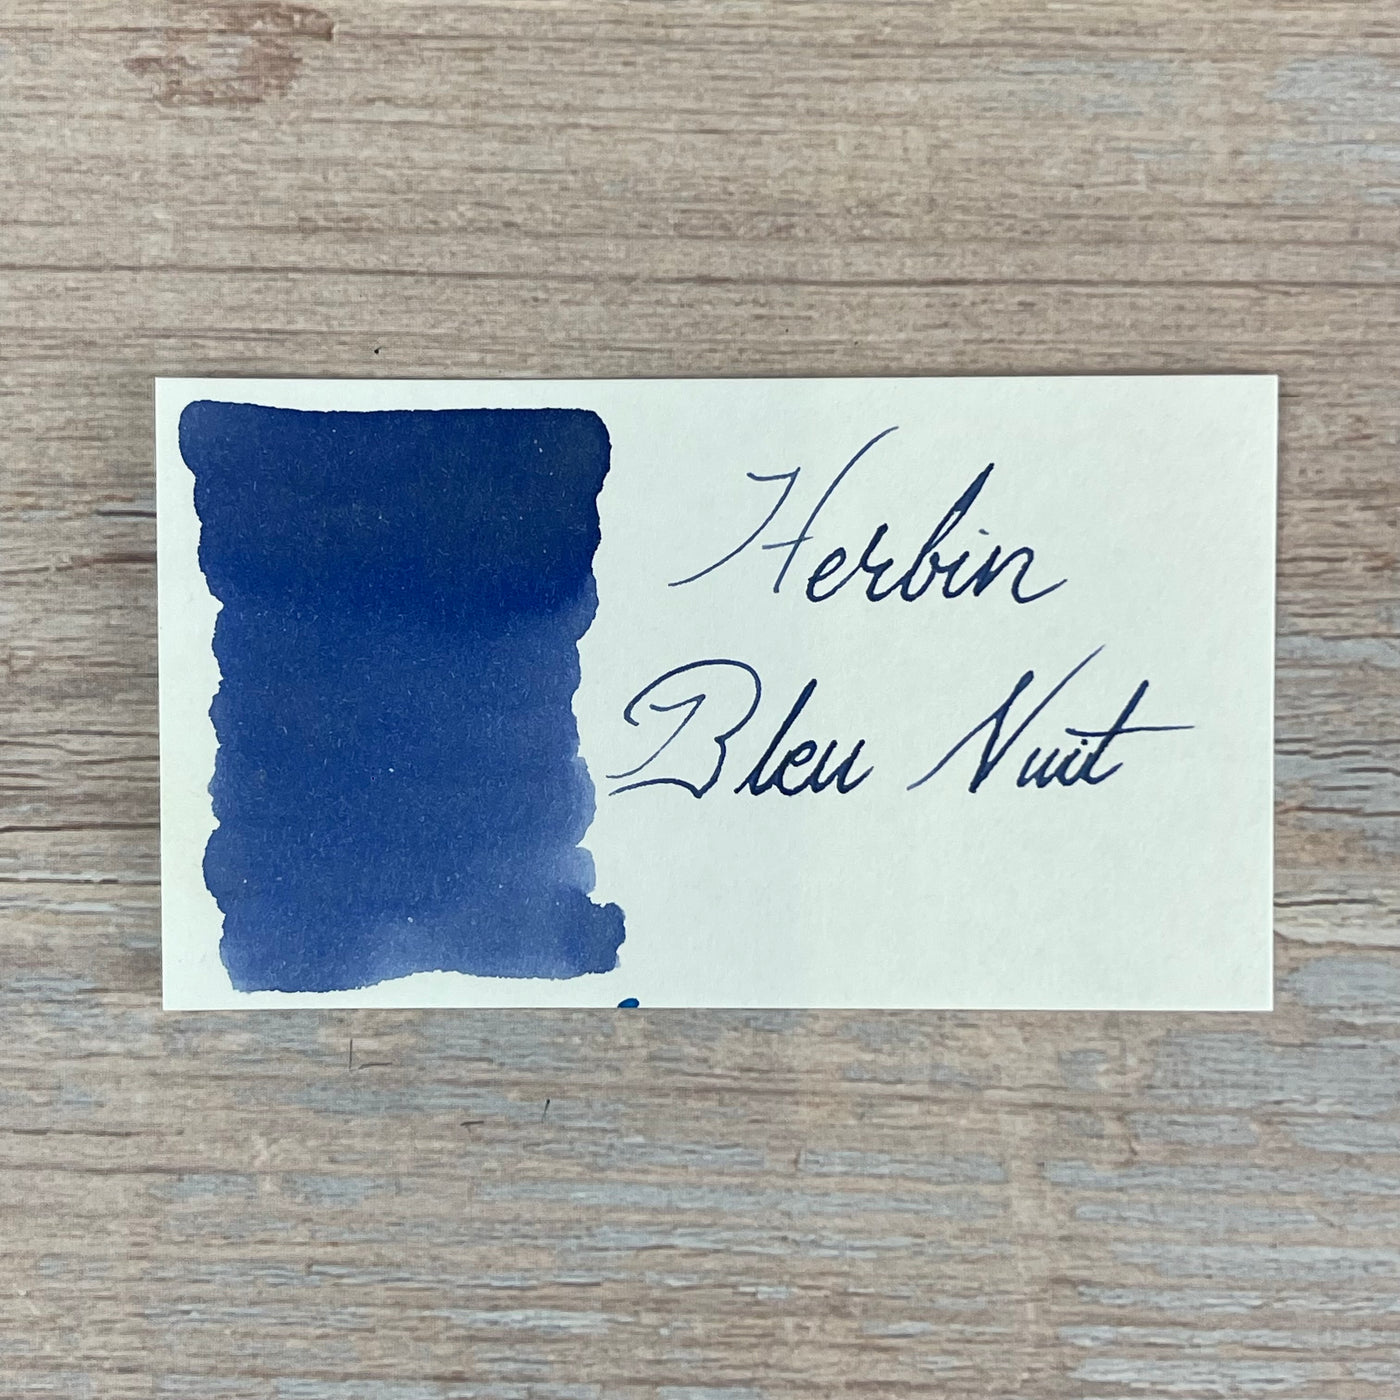 Jacques Herbin Bleu Nuit - 30ml Bottled Ink